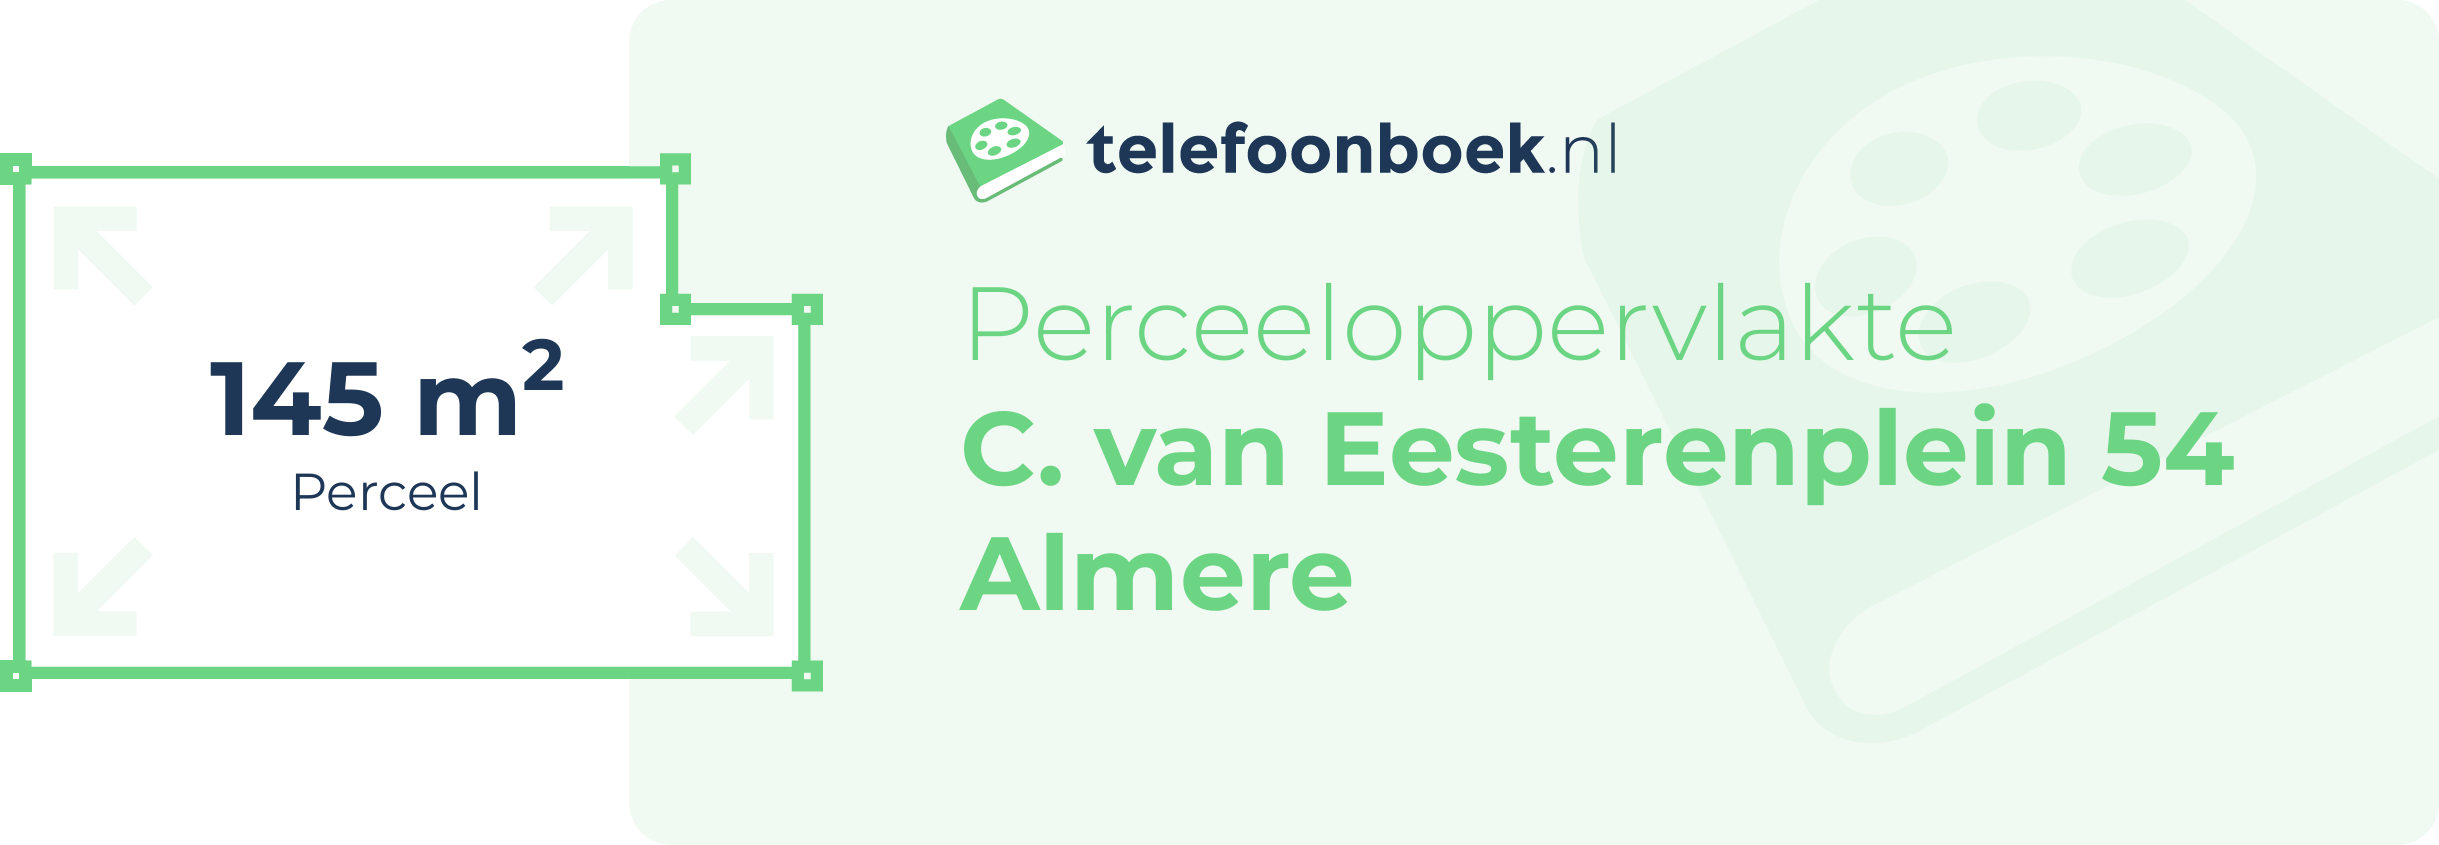 Perceeloppervlakte C. Van Eesterenplein 54 Almere